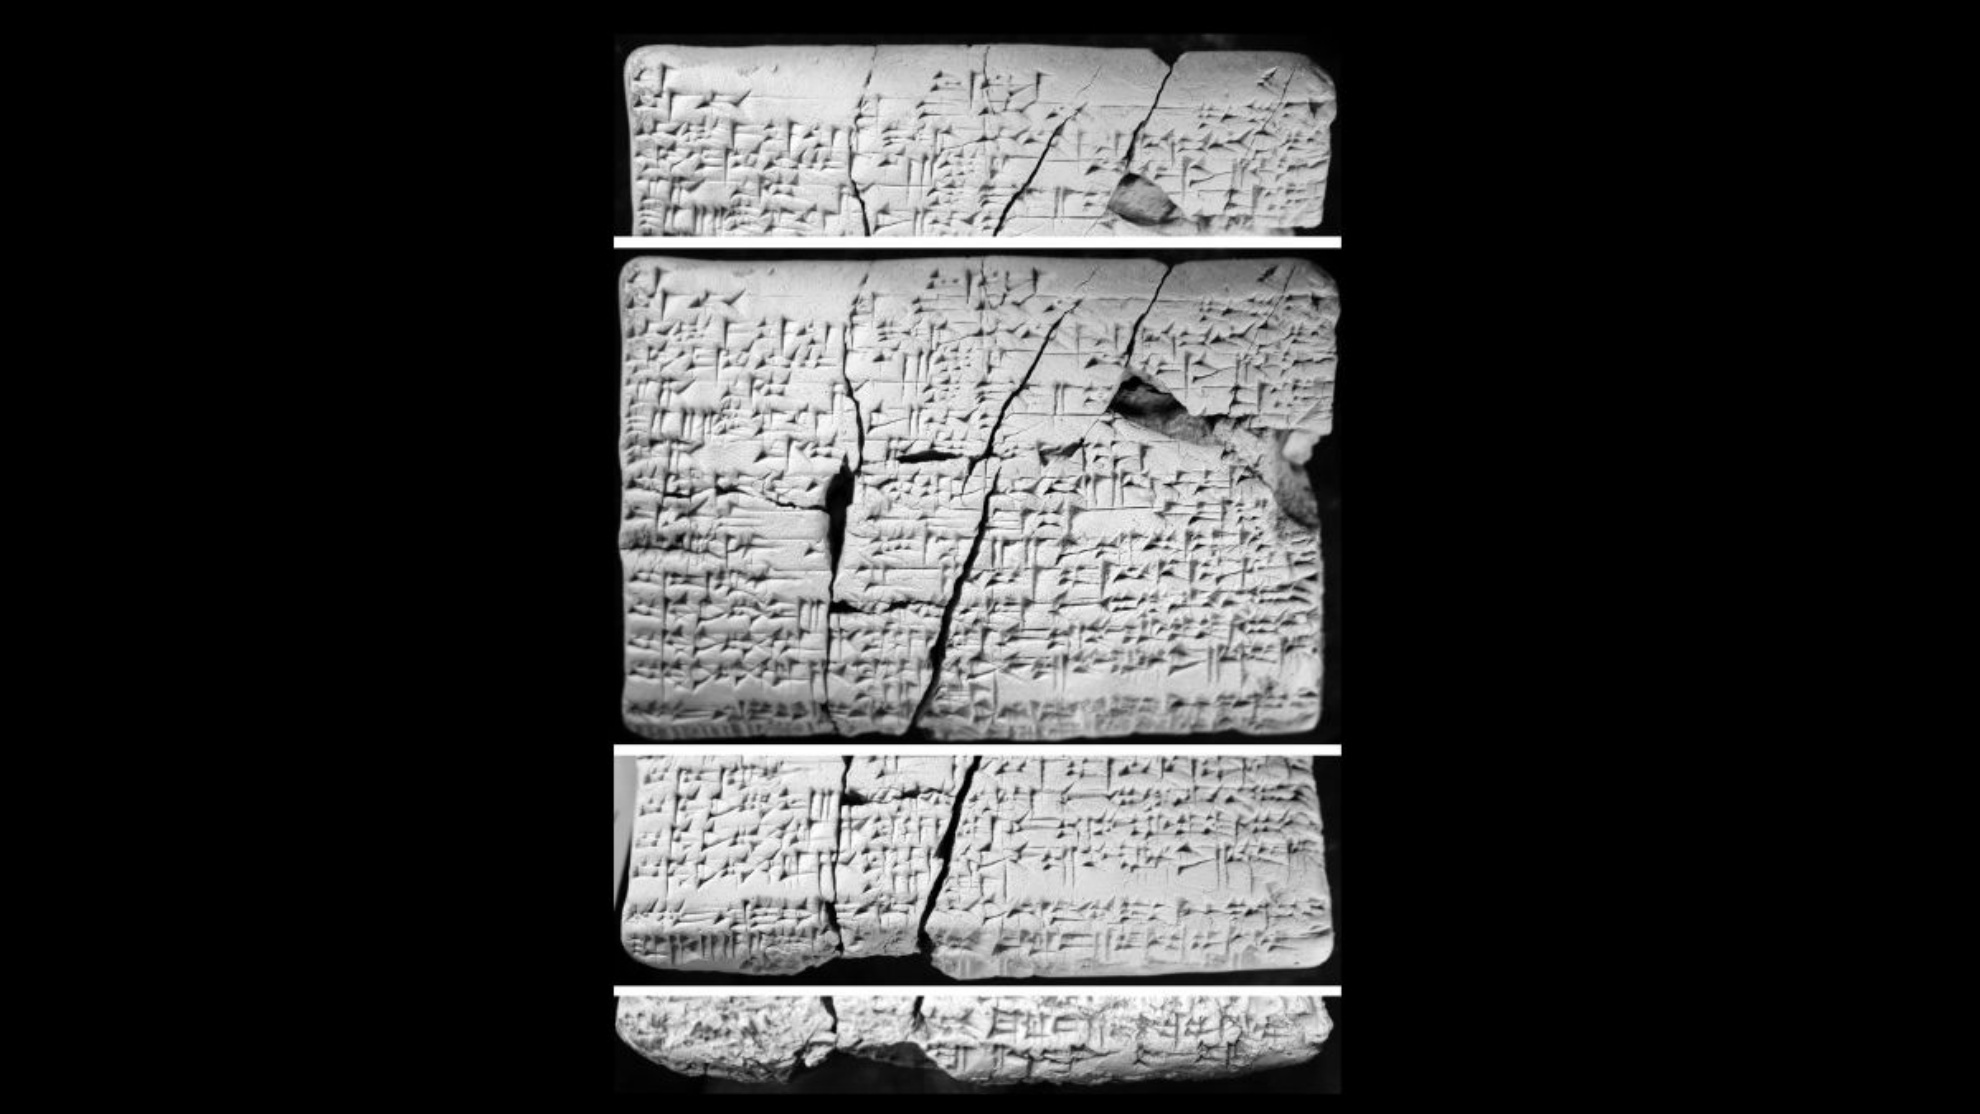 Таблички были найдены в Ираке около 30 лет назад. Ученые начали изучать их в 2016 году и обнаружили, что они содержат детали на аккадском языке «утерянного» аморейского языка.